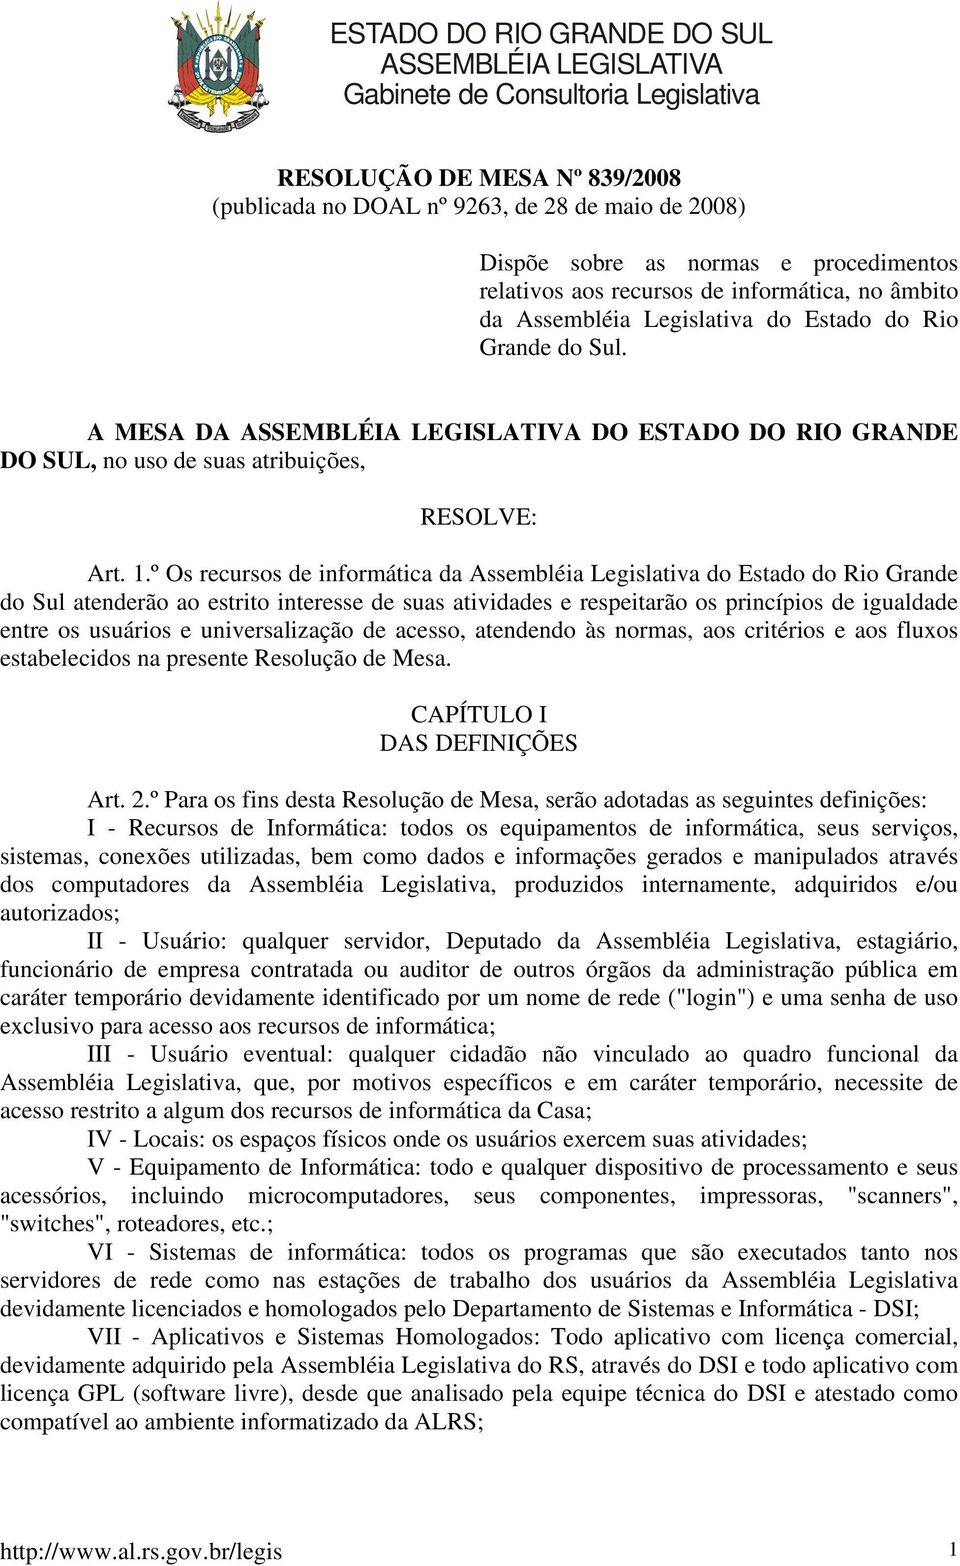 A MESA DA ASSEMBLÉIA LEGISLATIVA DO ESTADO DO RIO GRANDE DO SUL, no uso de suas atribuições, RESOLVE: Art. 1.